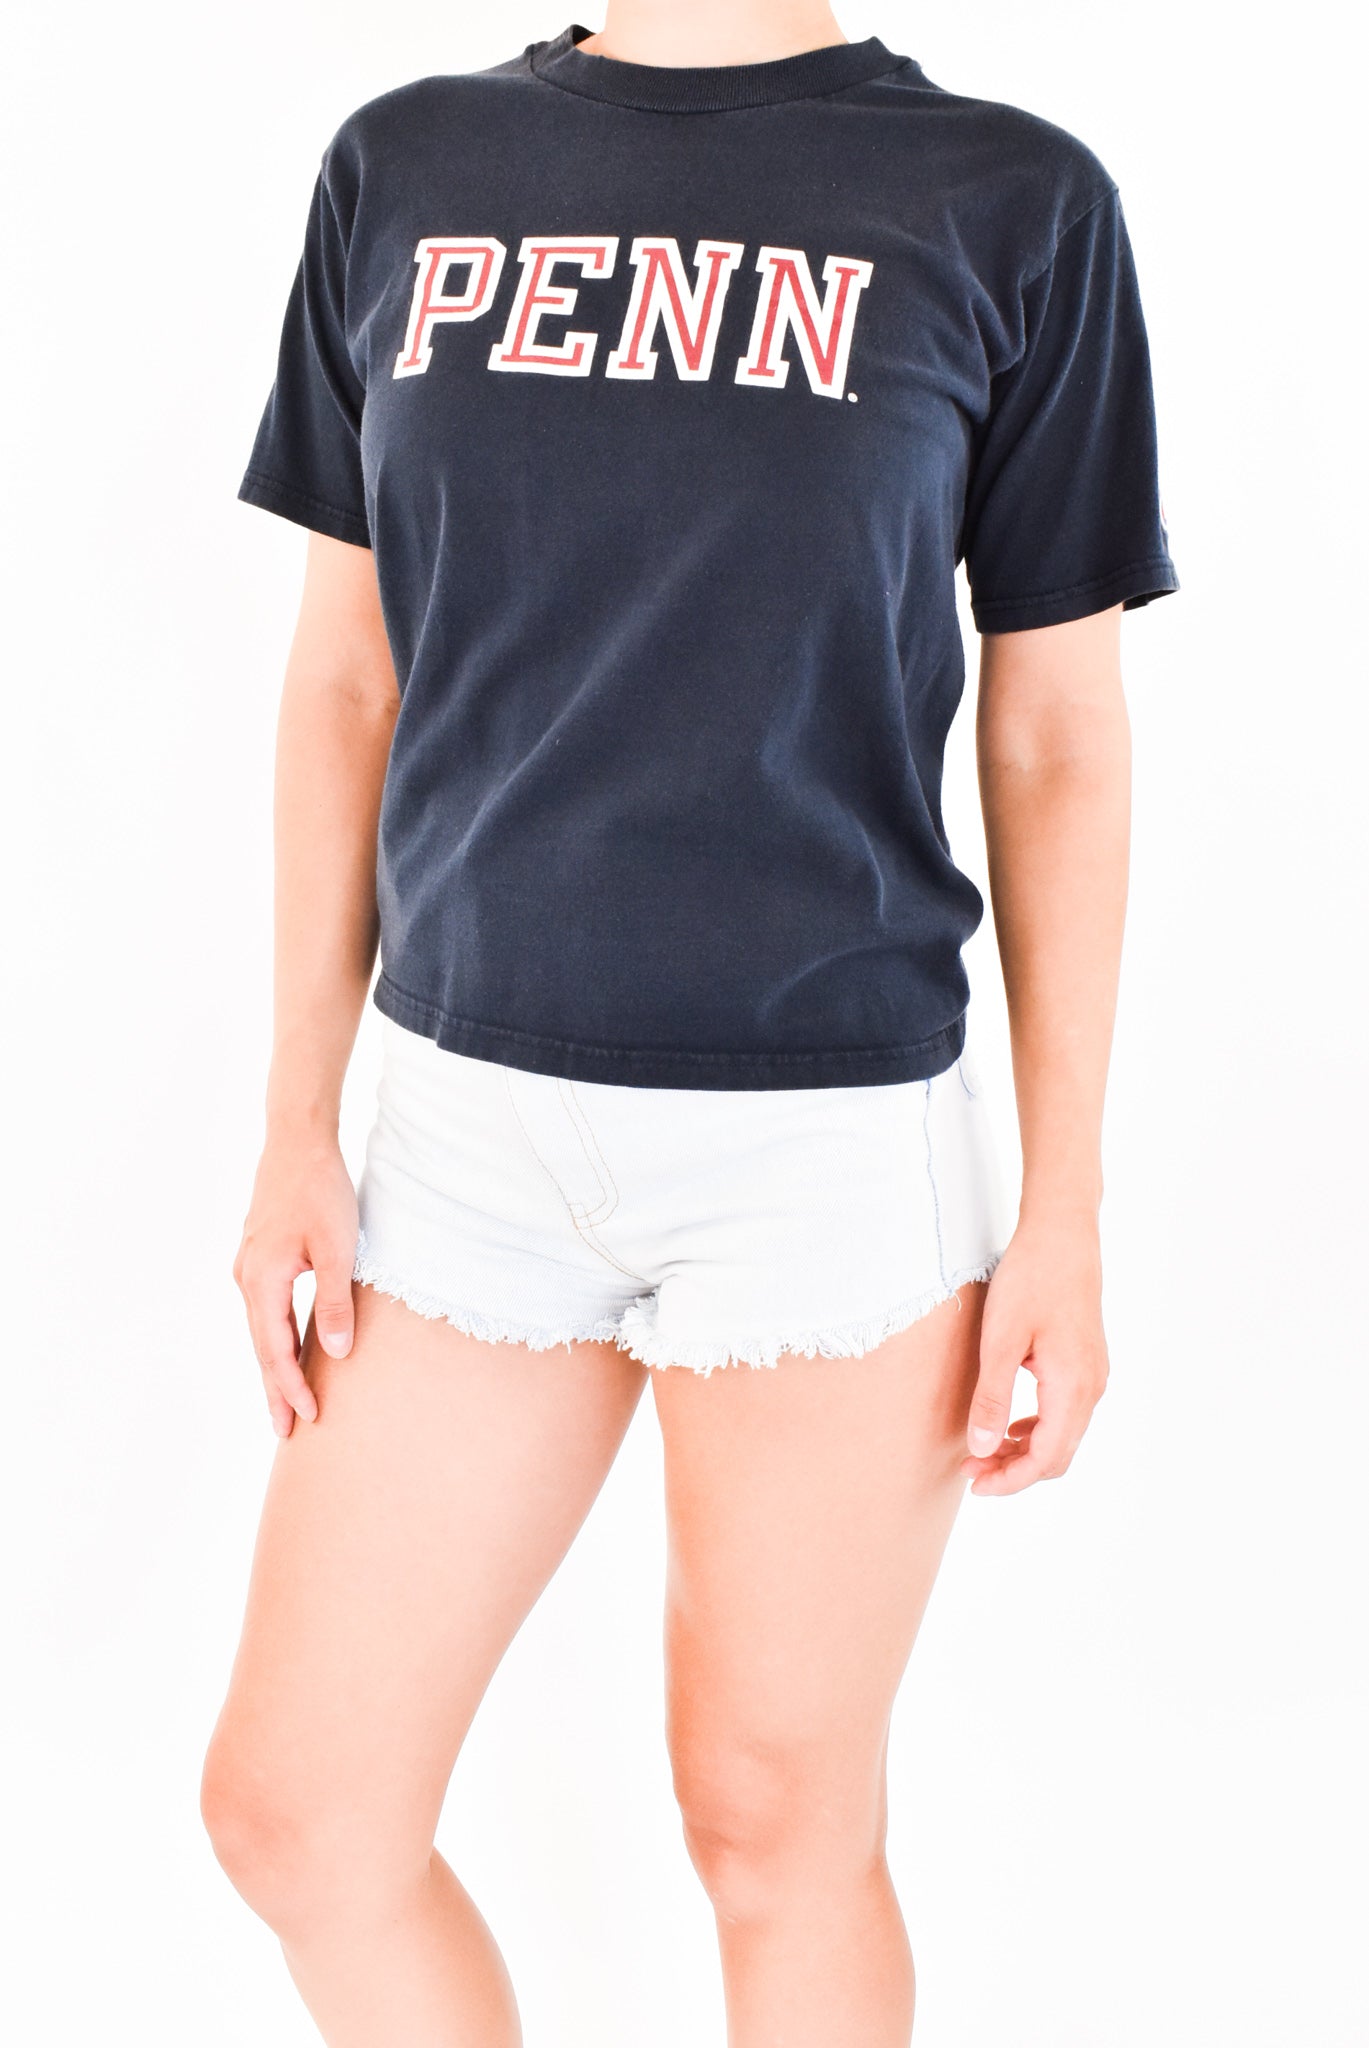 Navy Penn T-Shirt